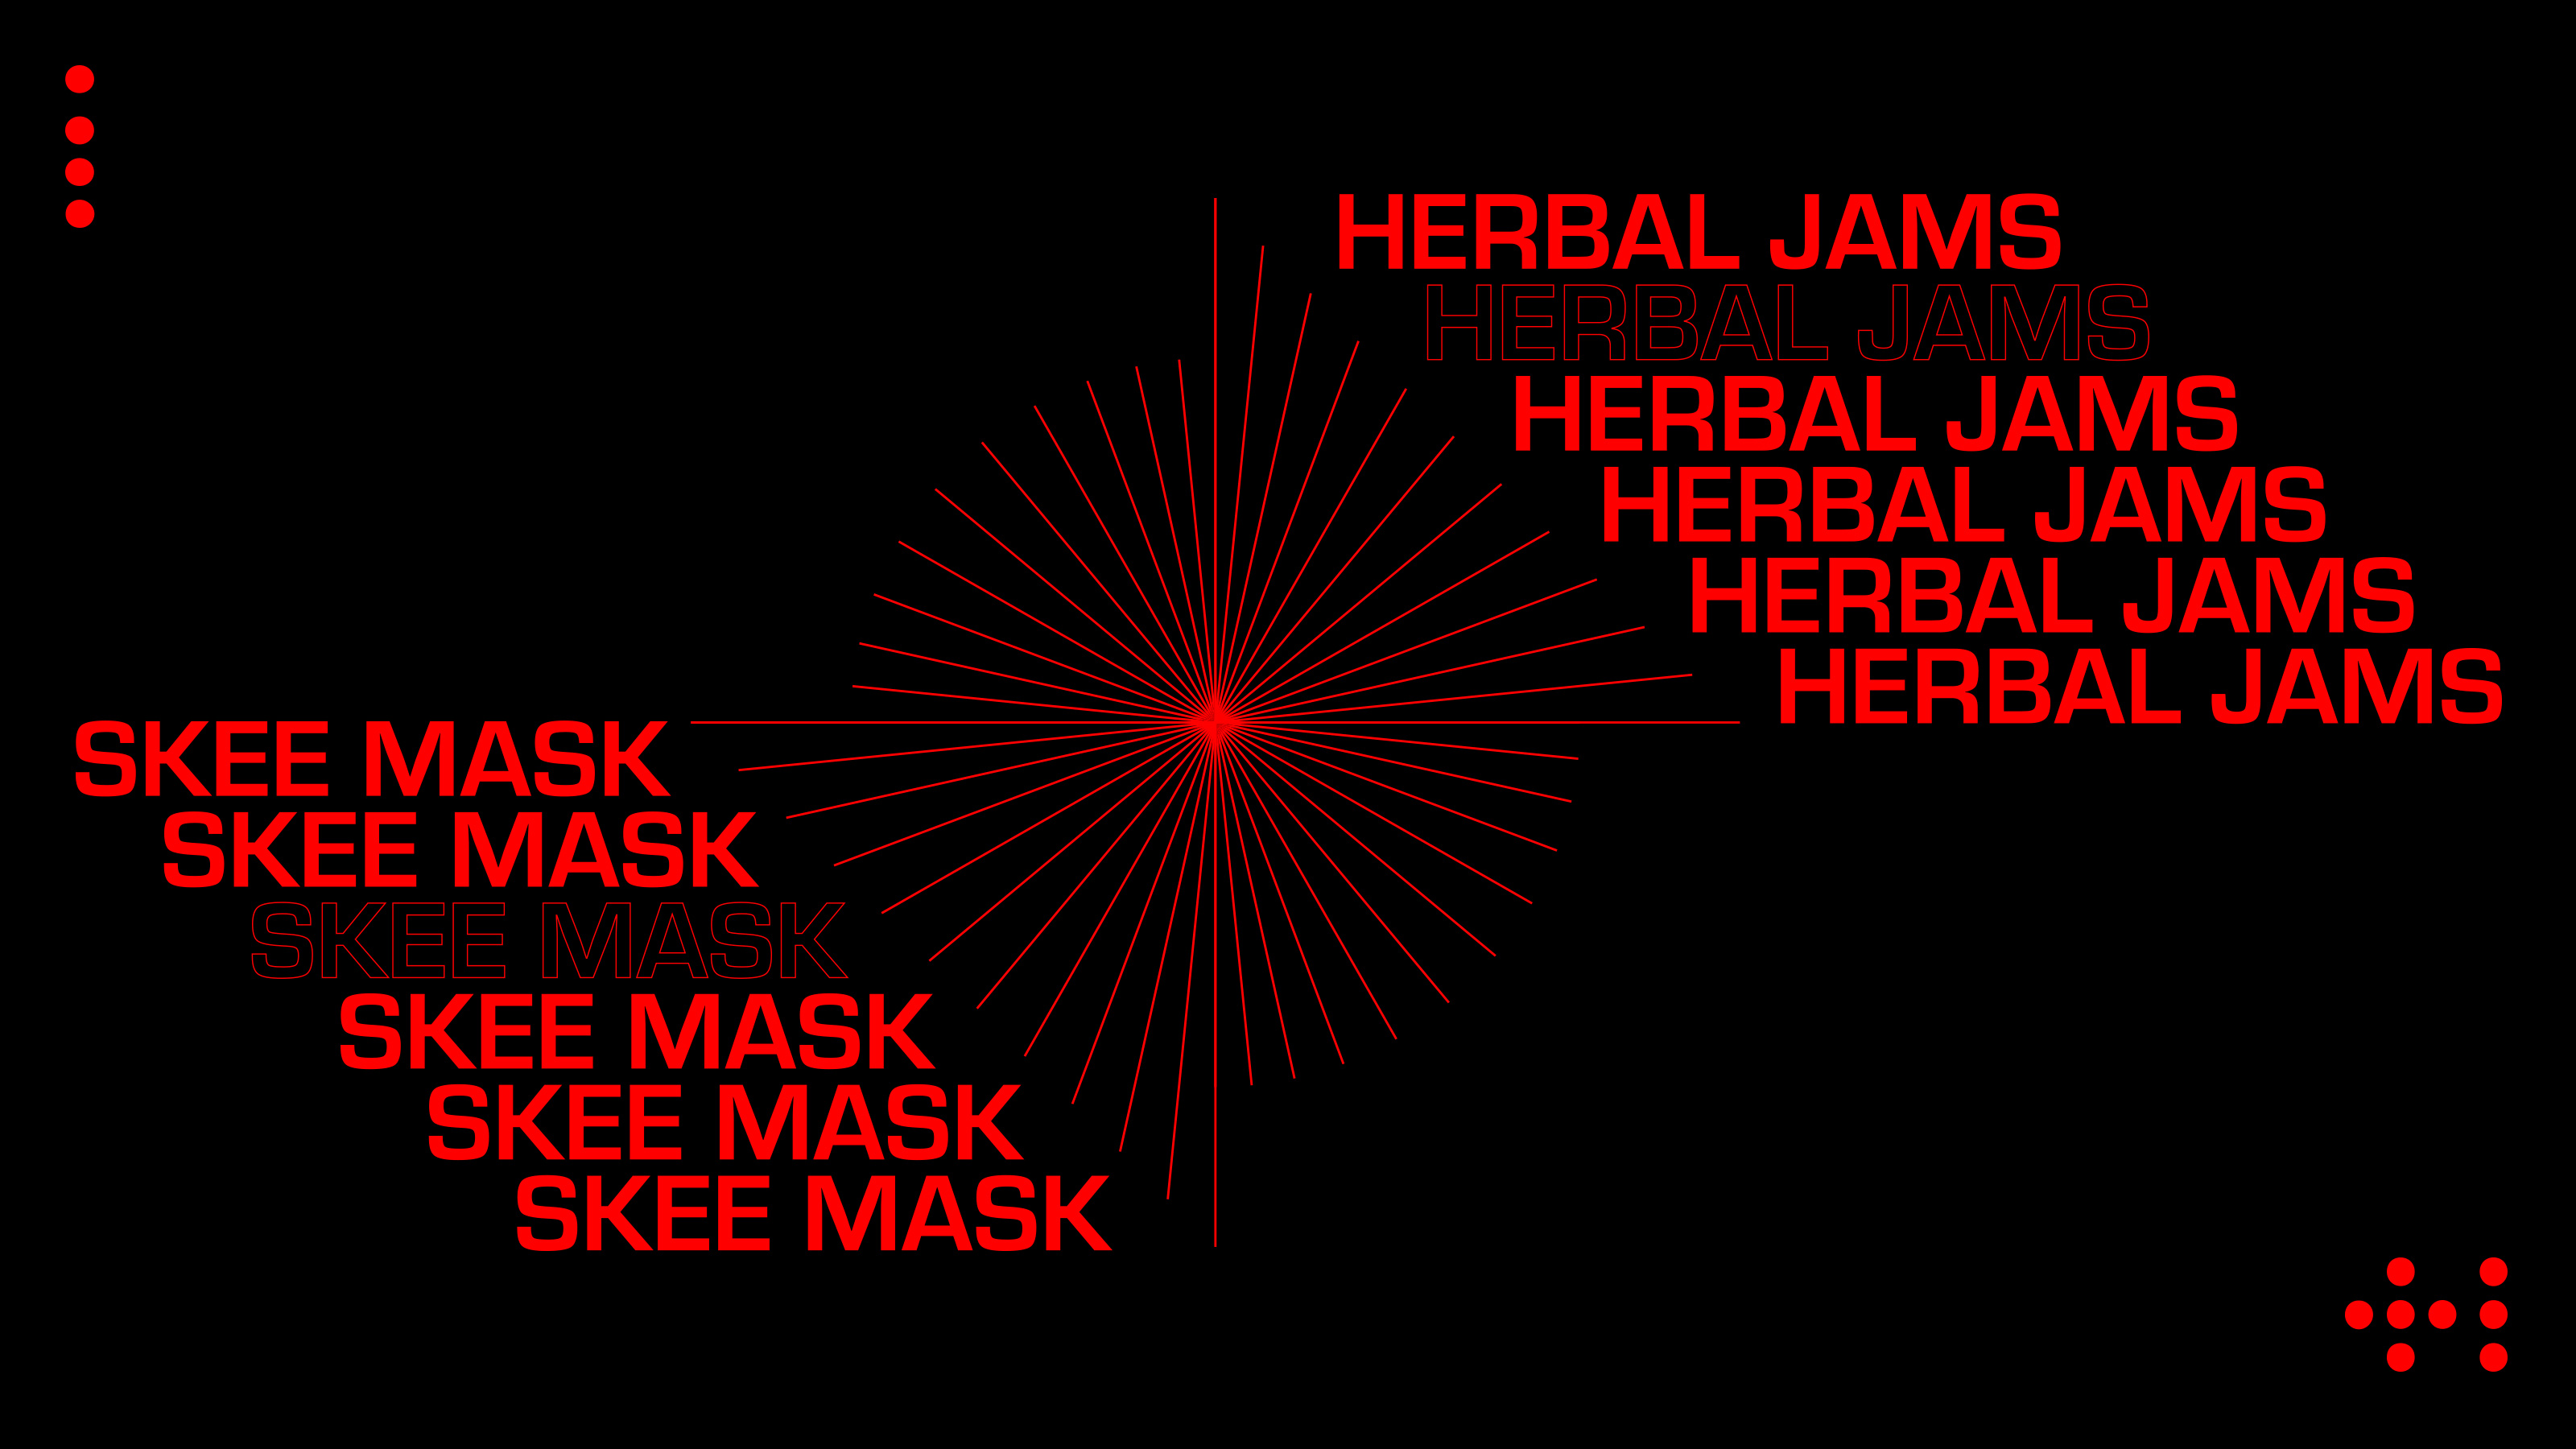 Skee Mask: Herbal jams  